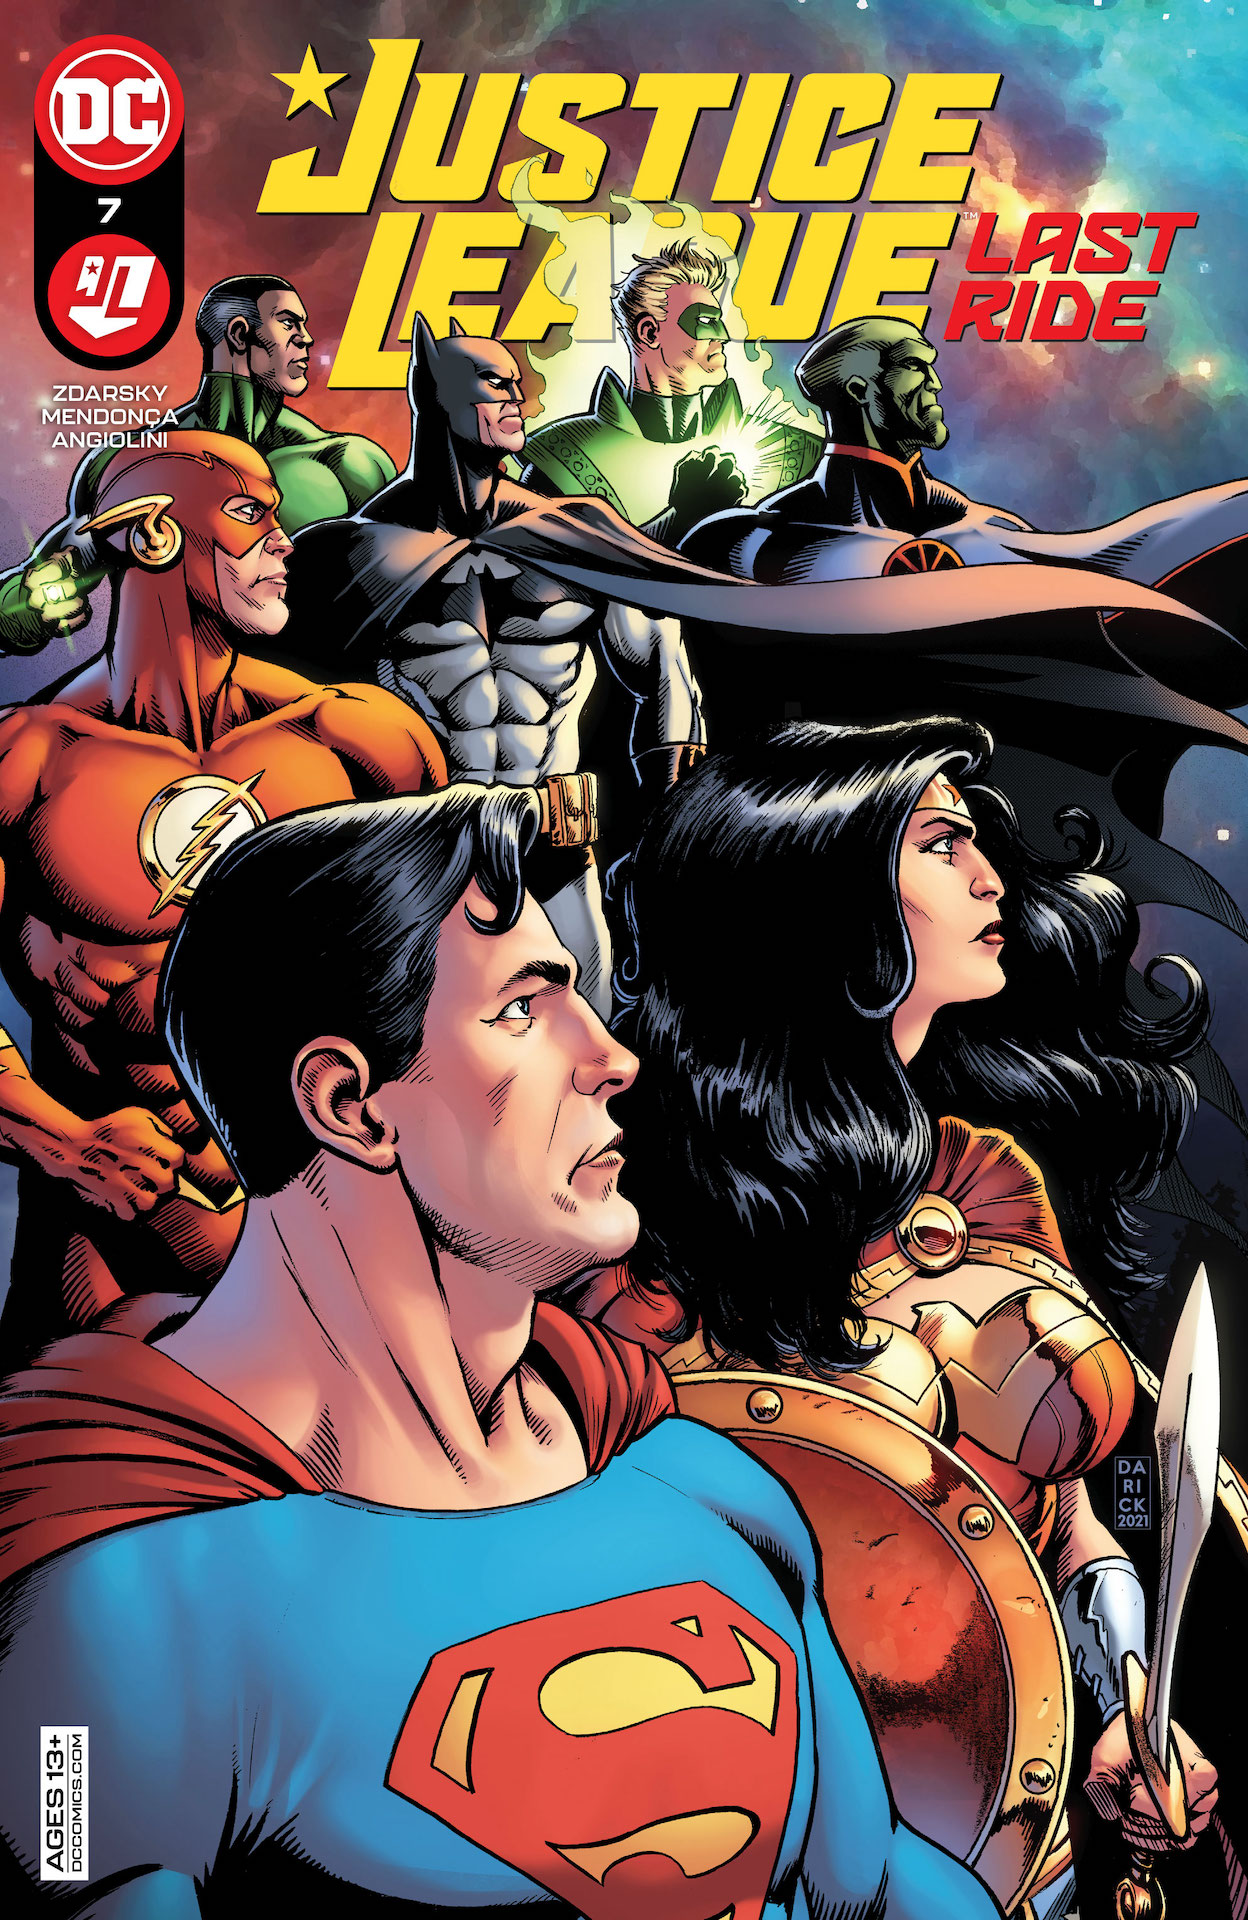 DC Preview: Justice League Last Ride #7